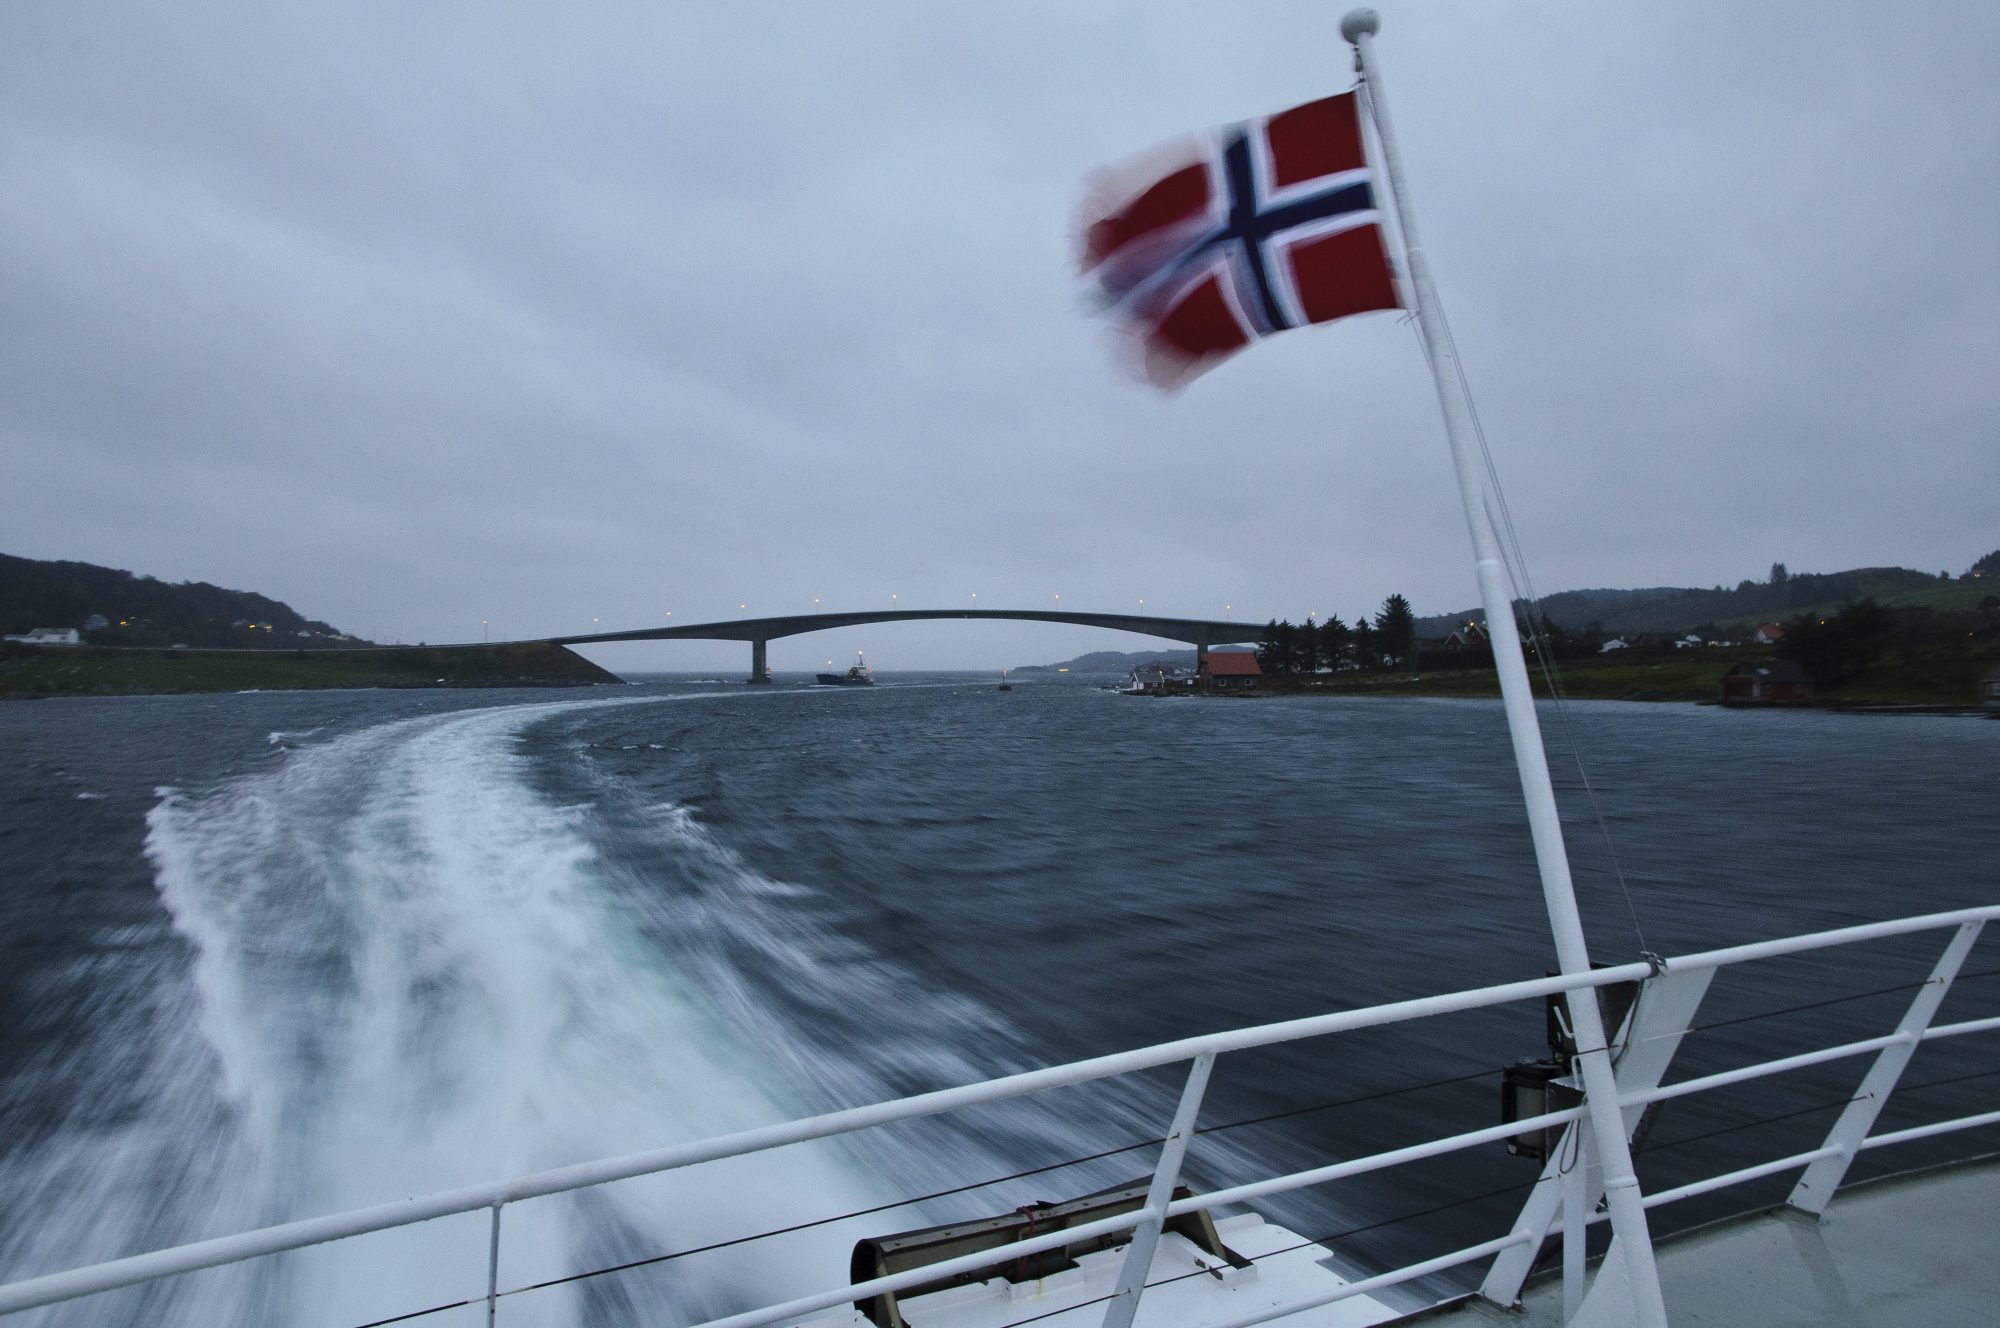 Bilde tatt fra bakdekket på en hurgibåt i overskyet vær. Det norske flagget vaier i forgrunnen. Kjølvann og kystlandskap vises i bakgrunnen.